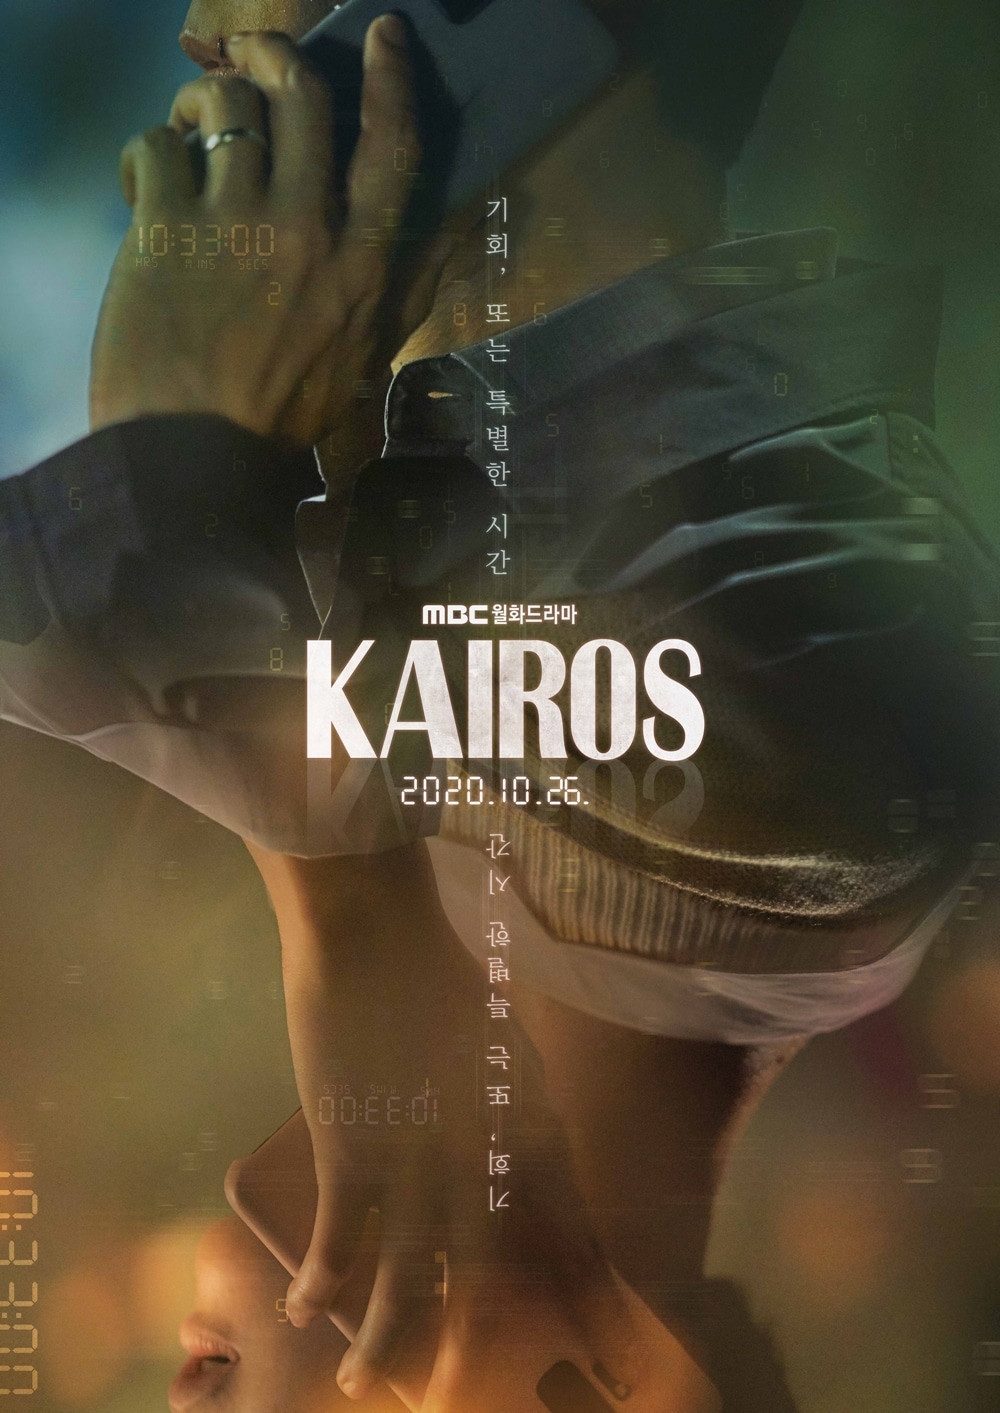 2020 Kairos الدراما الكورية "كايروس". تقرير عن الدراما + الأبطال + جميع الحلقات مترجمة أونلاين . مسلسل كايروس الكوري مترجم. مسلسل Kairos الكوري مترجم